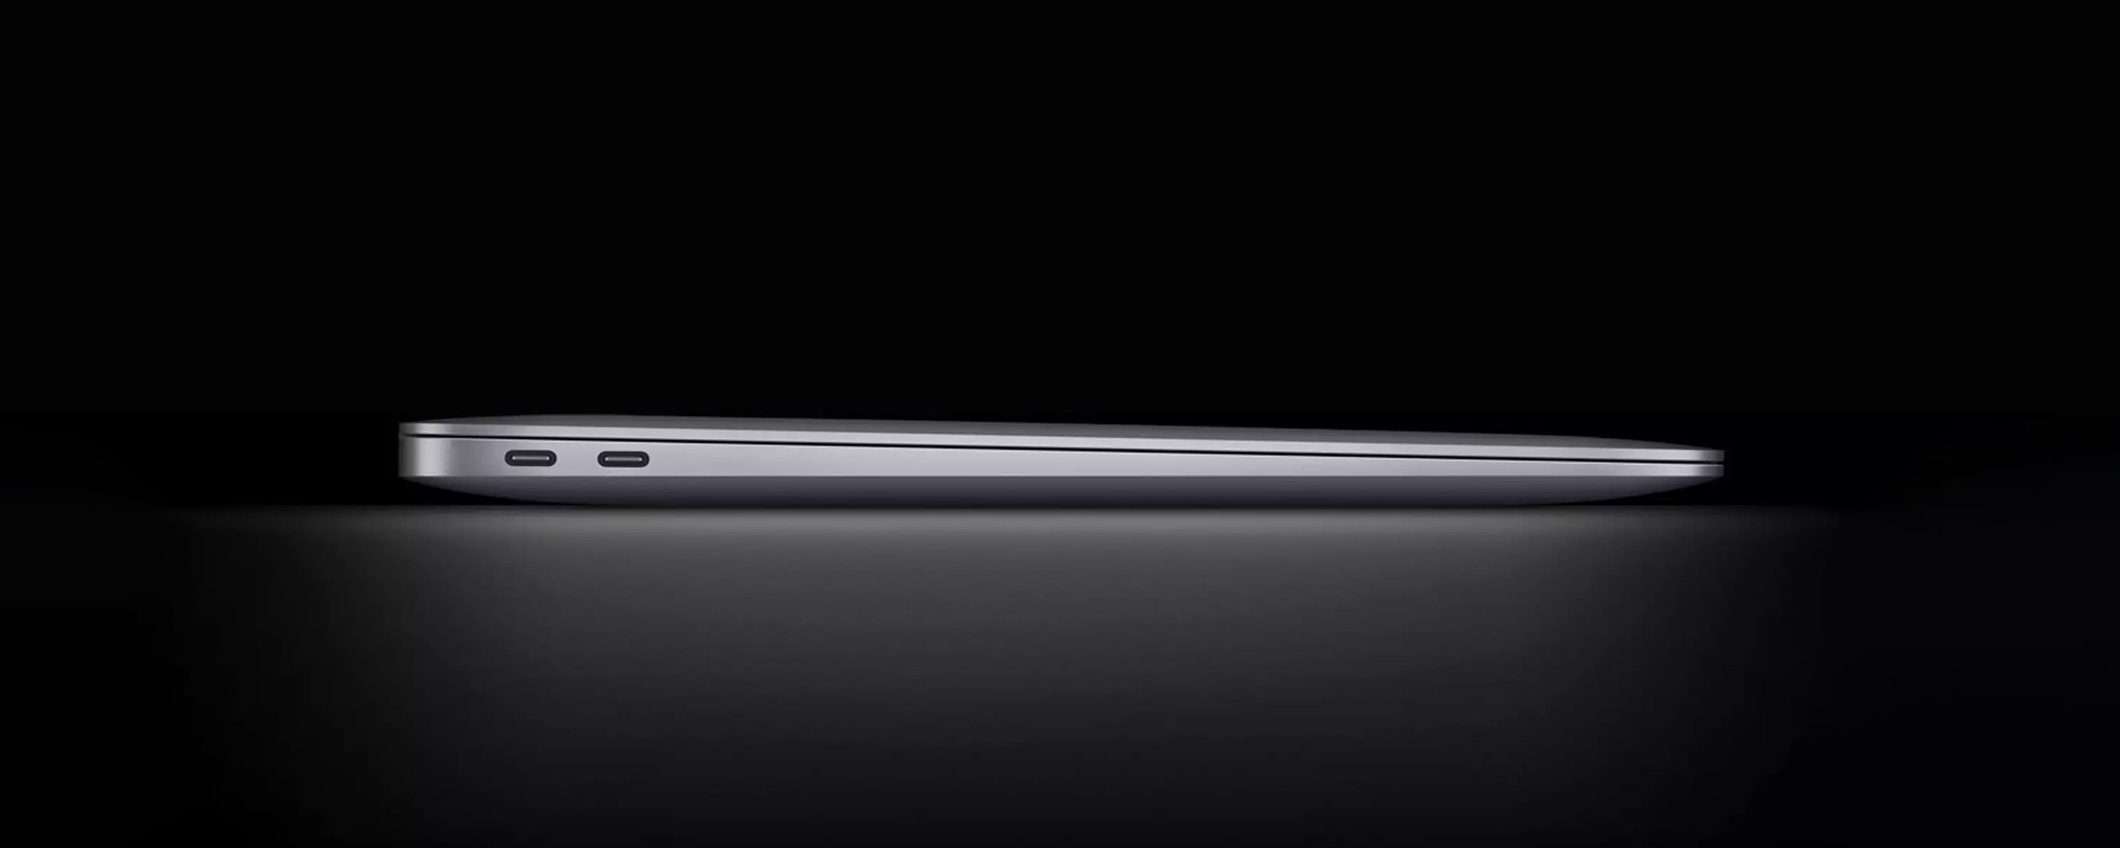 MacBook Air: cuore Apple M1 e 330€ di sconto